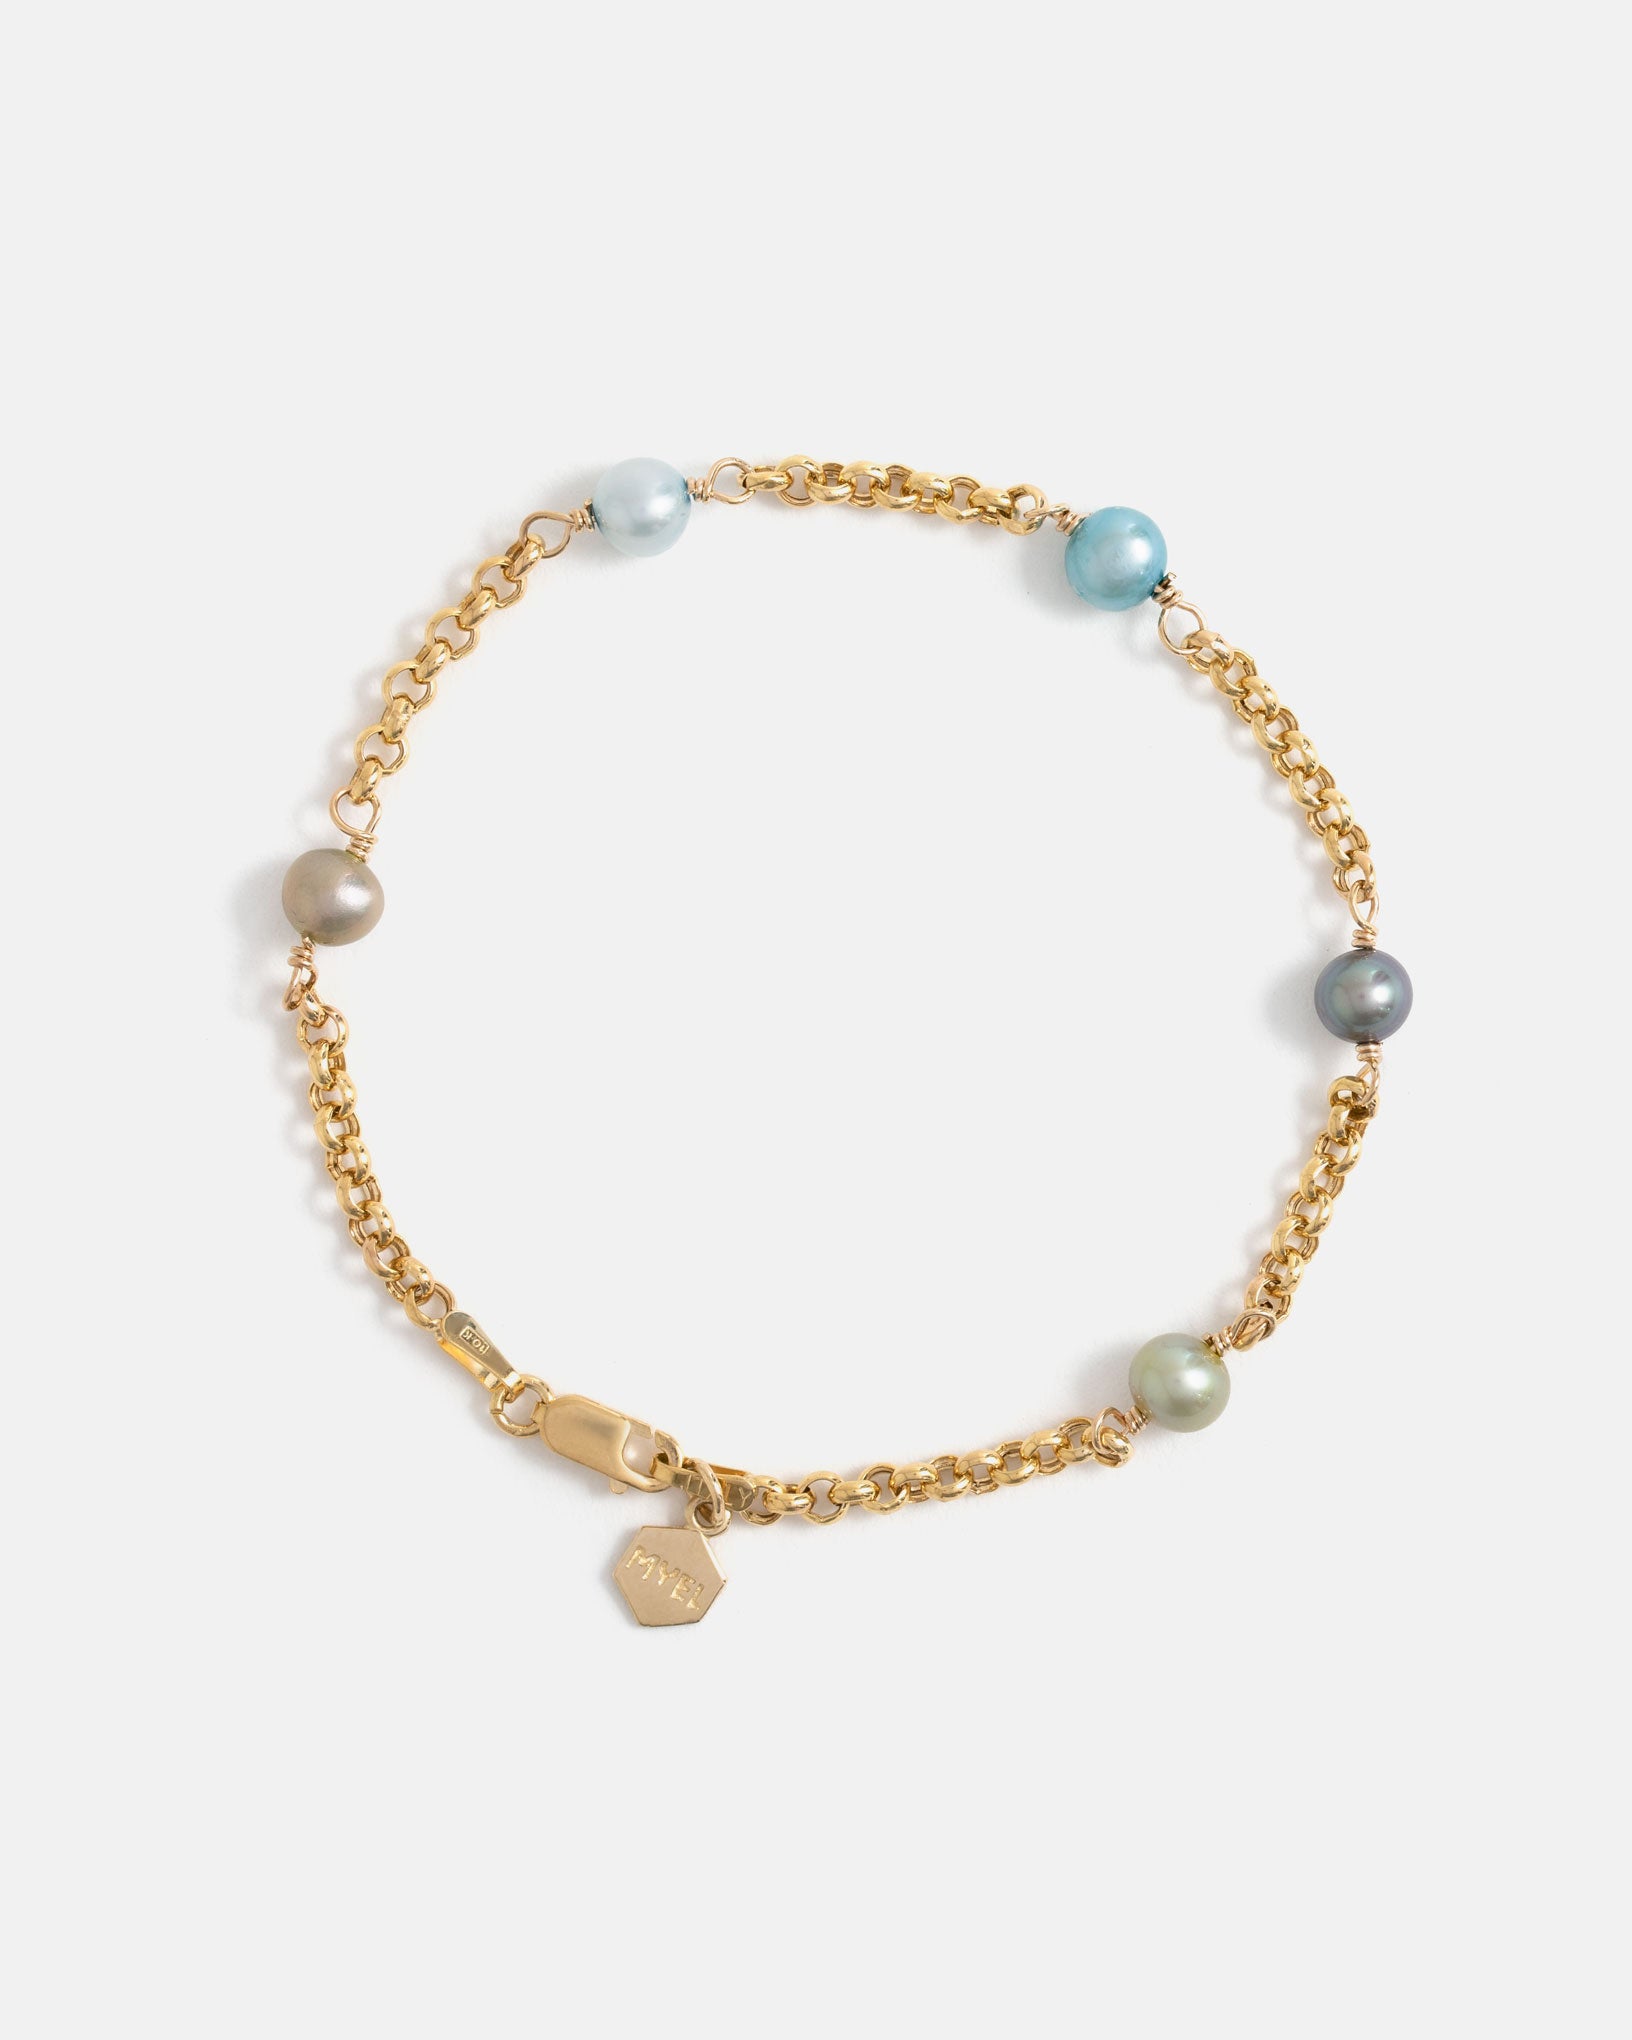 Bracelet Pom-pom en Or Jaune avec Perles aux tons Pastels